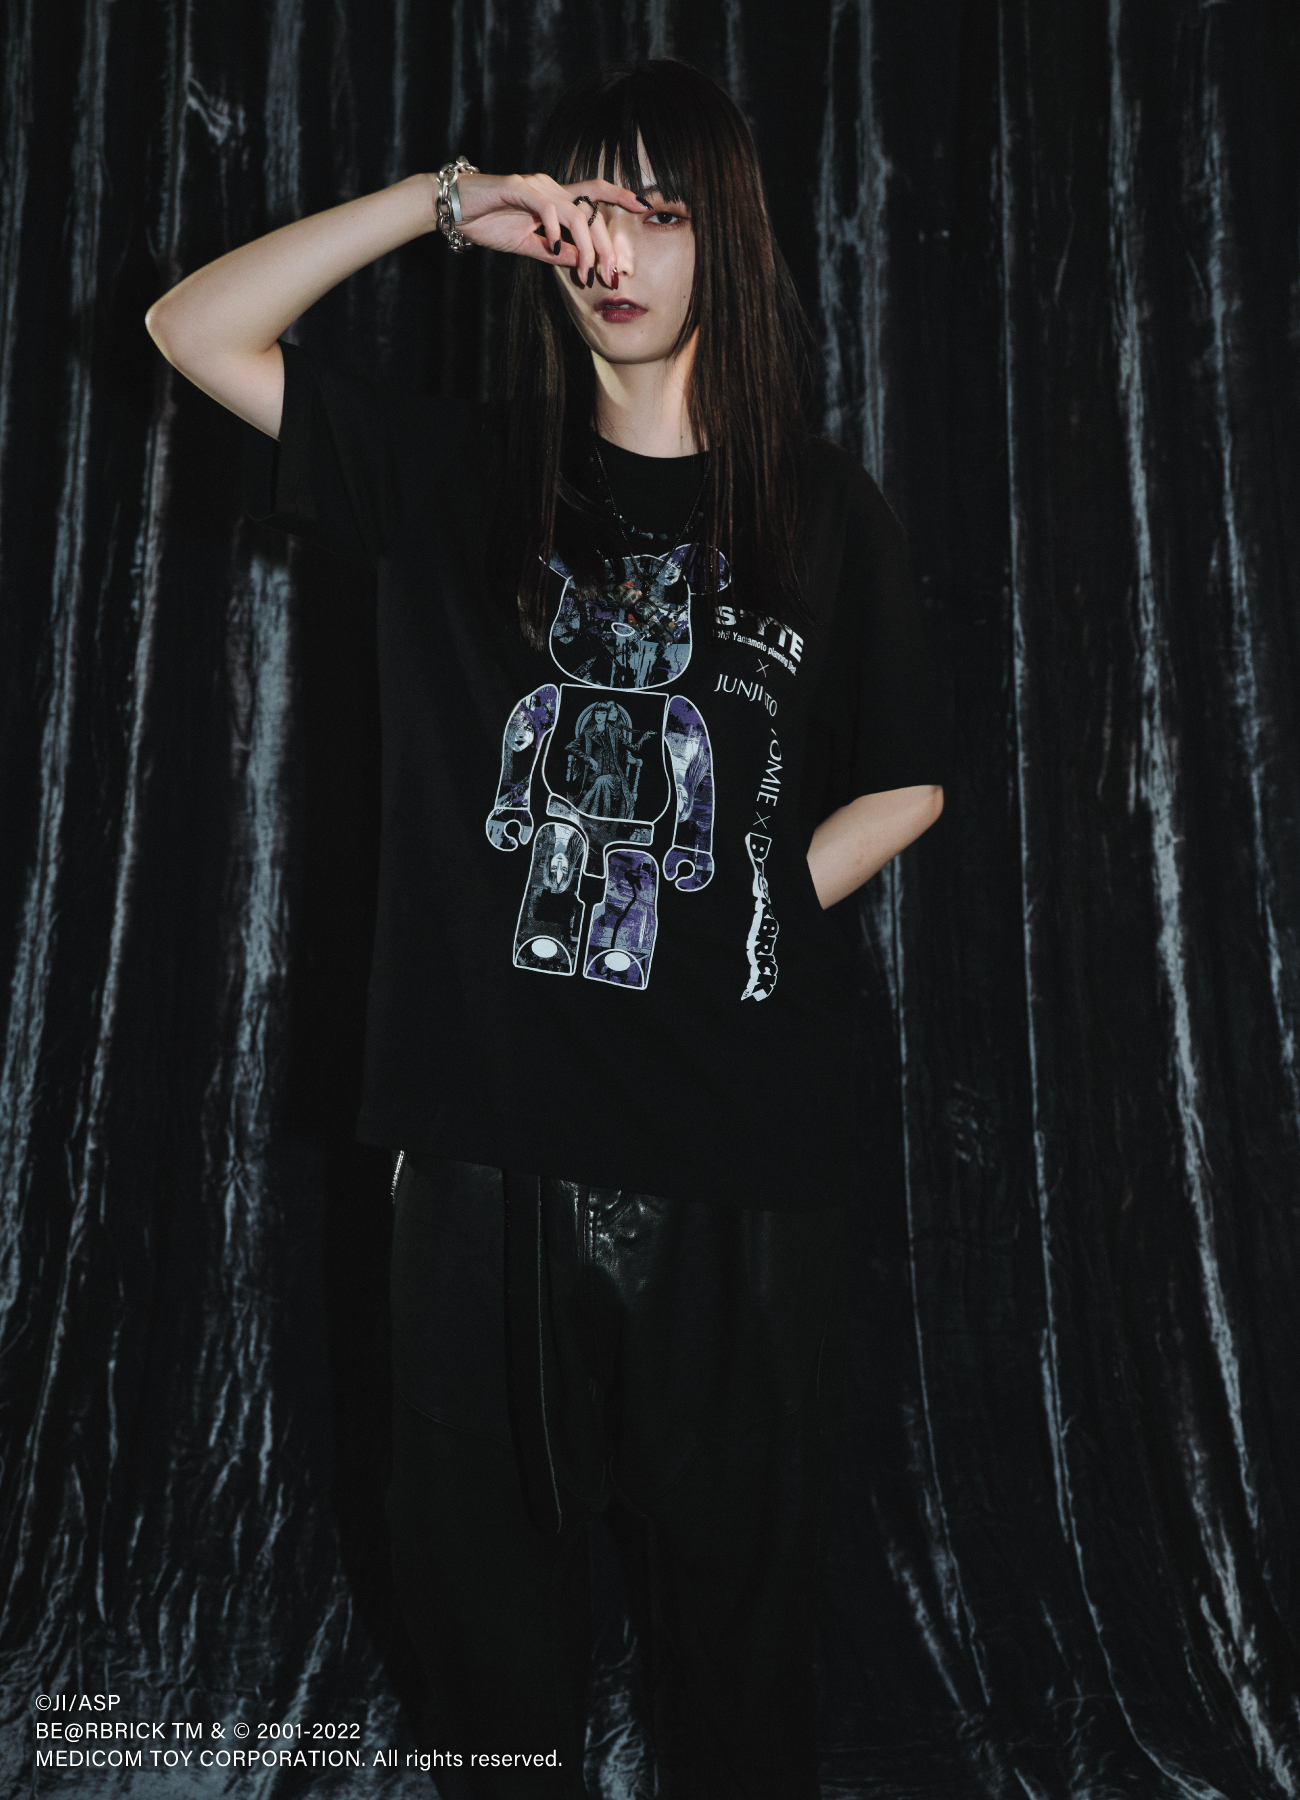 【9/1 12:00発売】BE@RBRICK × Junji ITO "Tomie" Masterpiece Collection Cover T-shirt